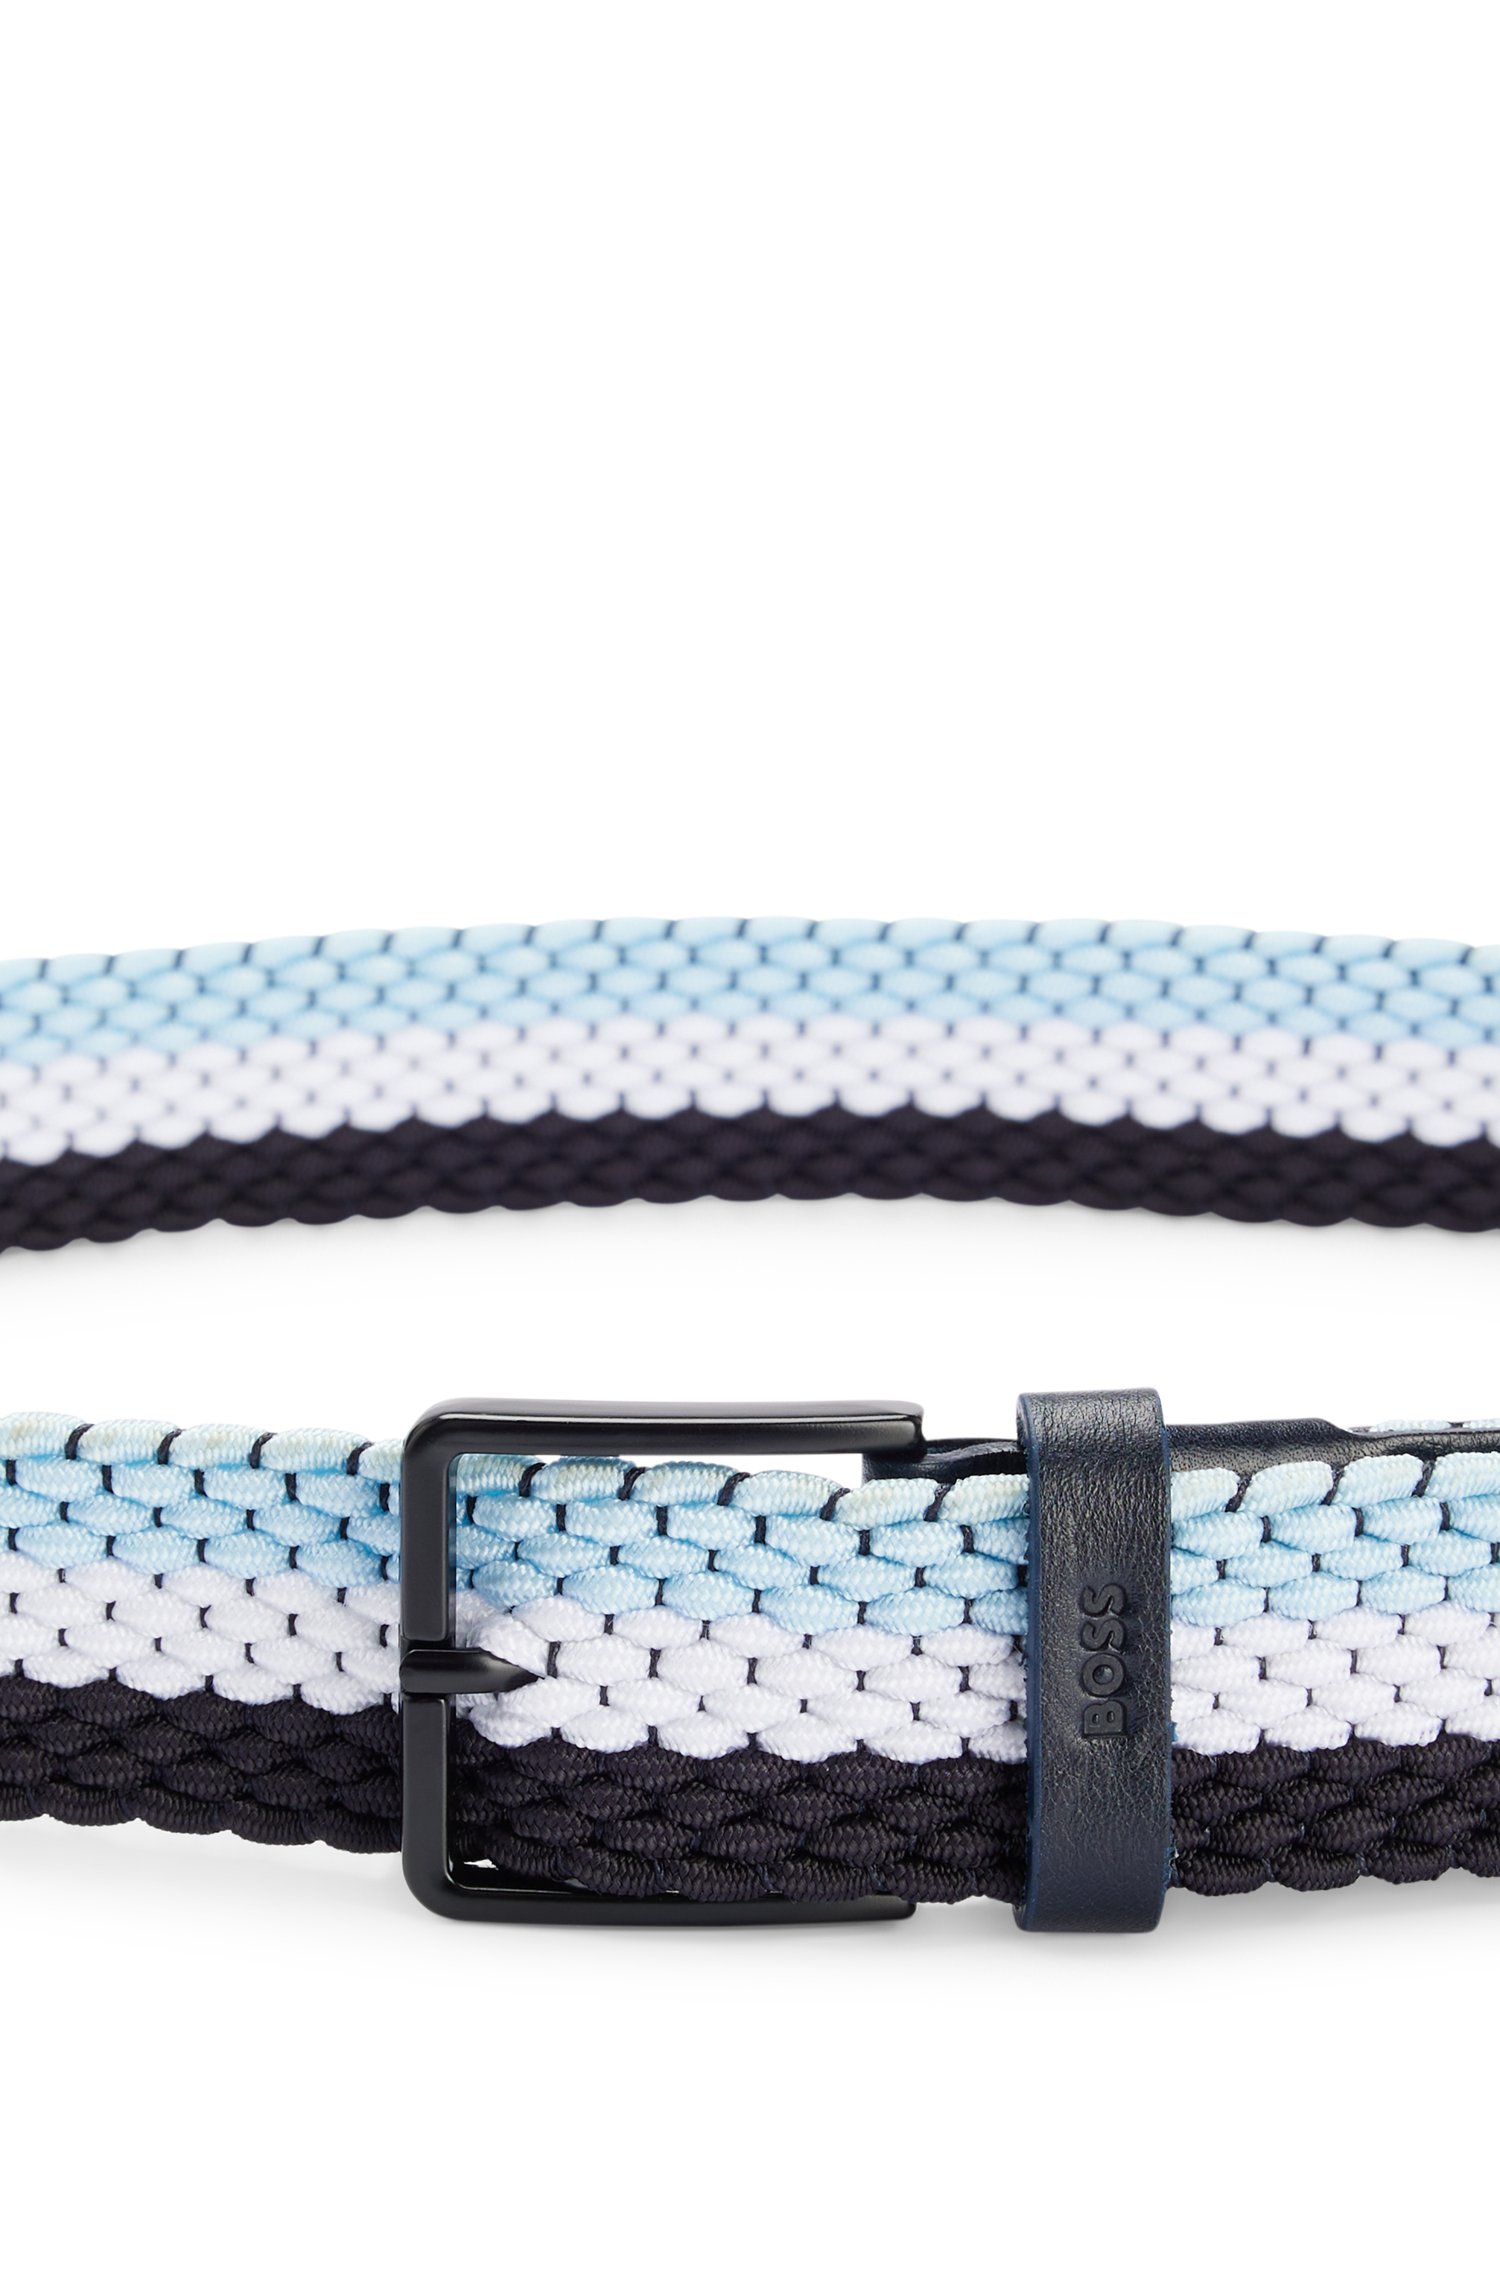 Cinturón tejido con apliques de piel y detalle color en contraste